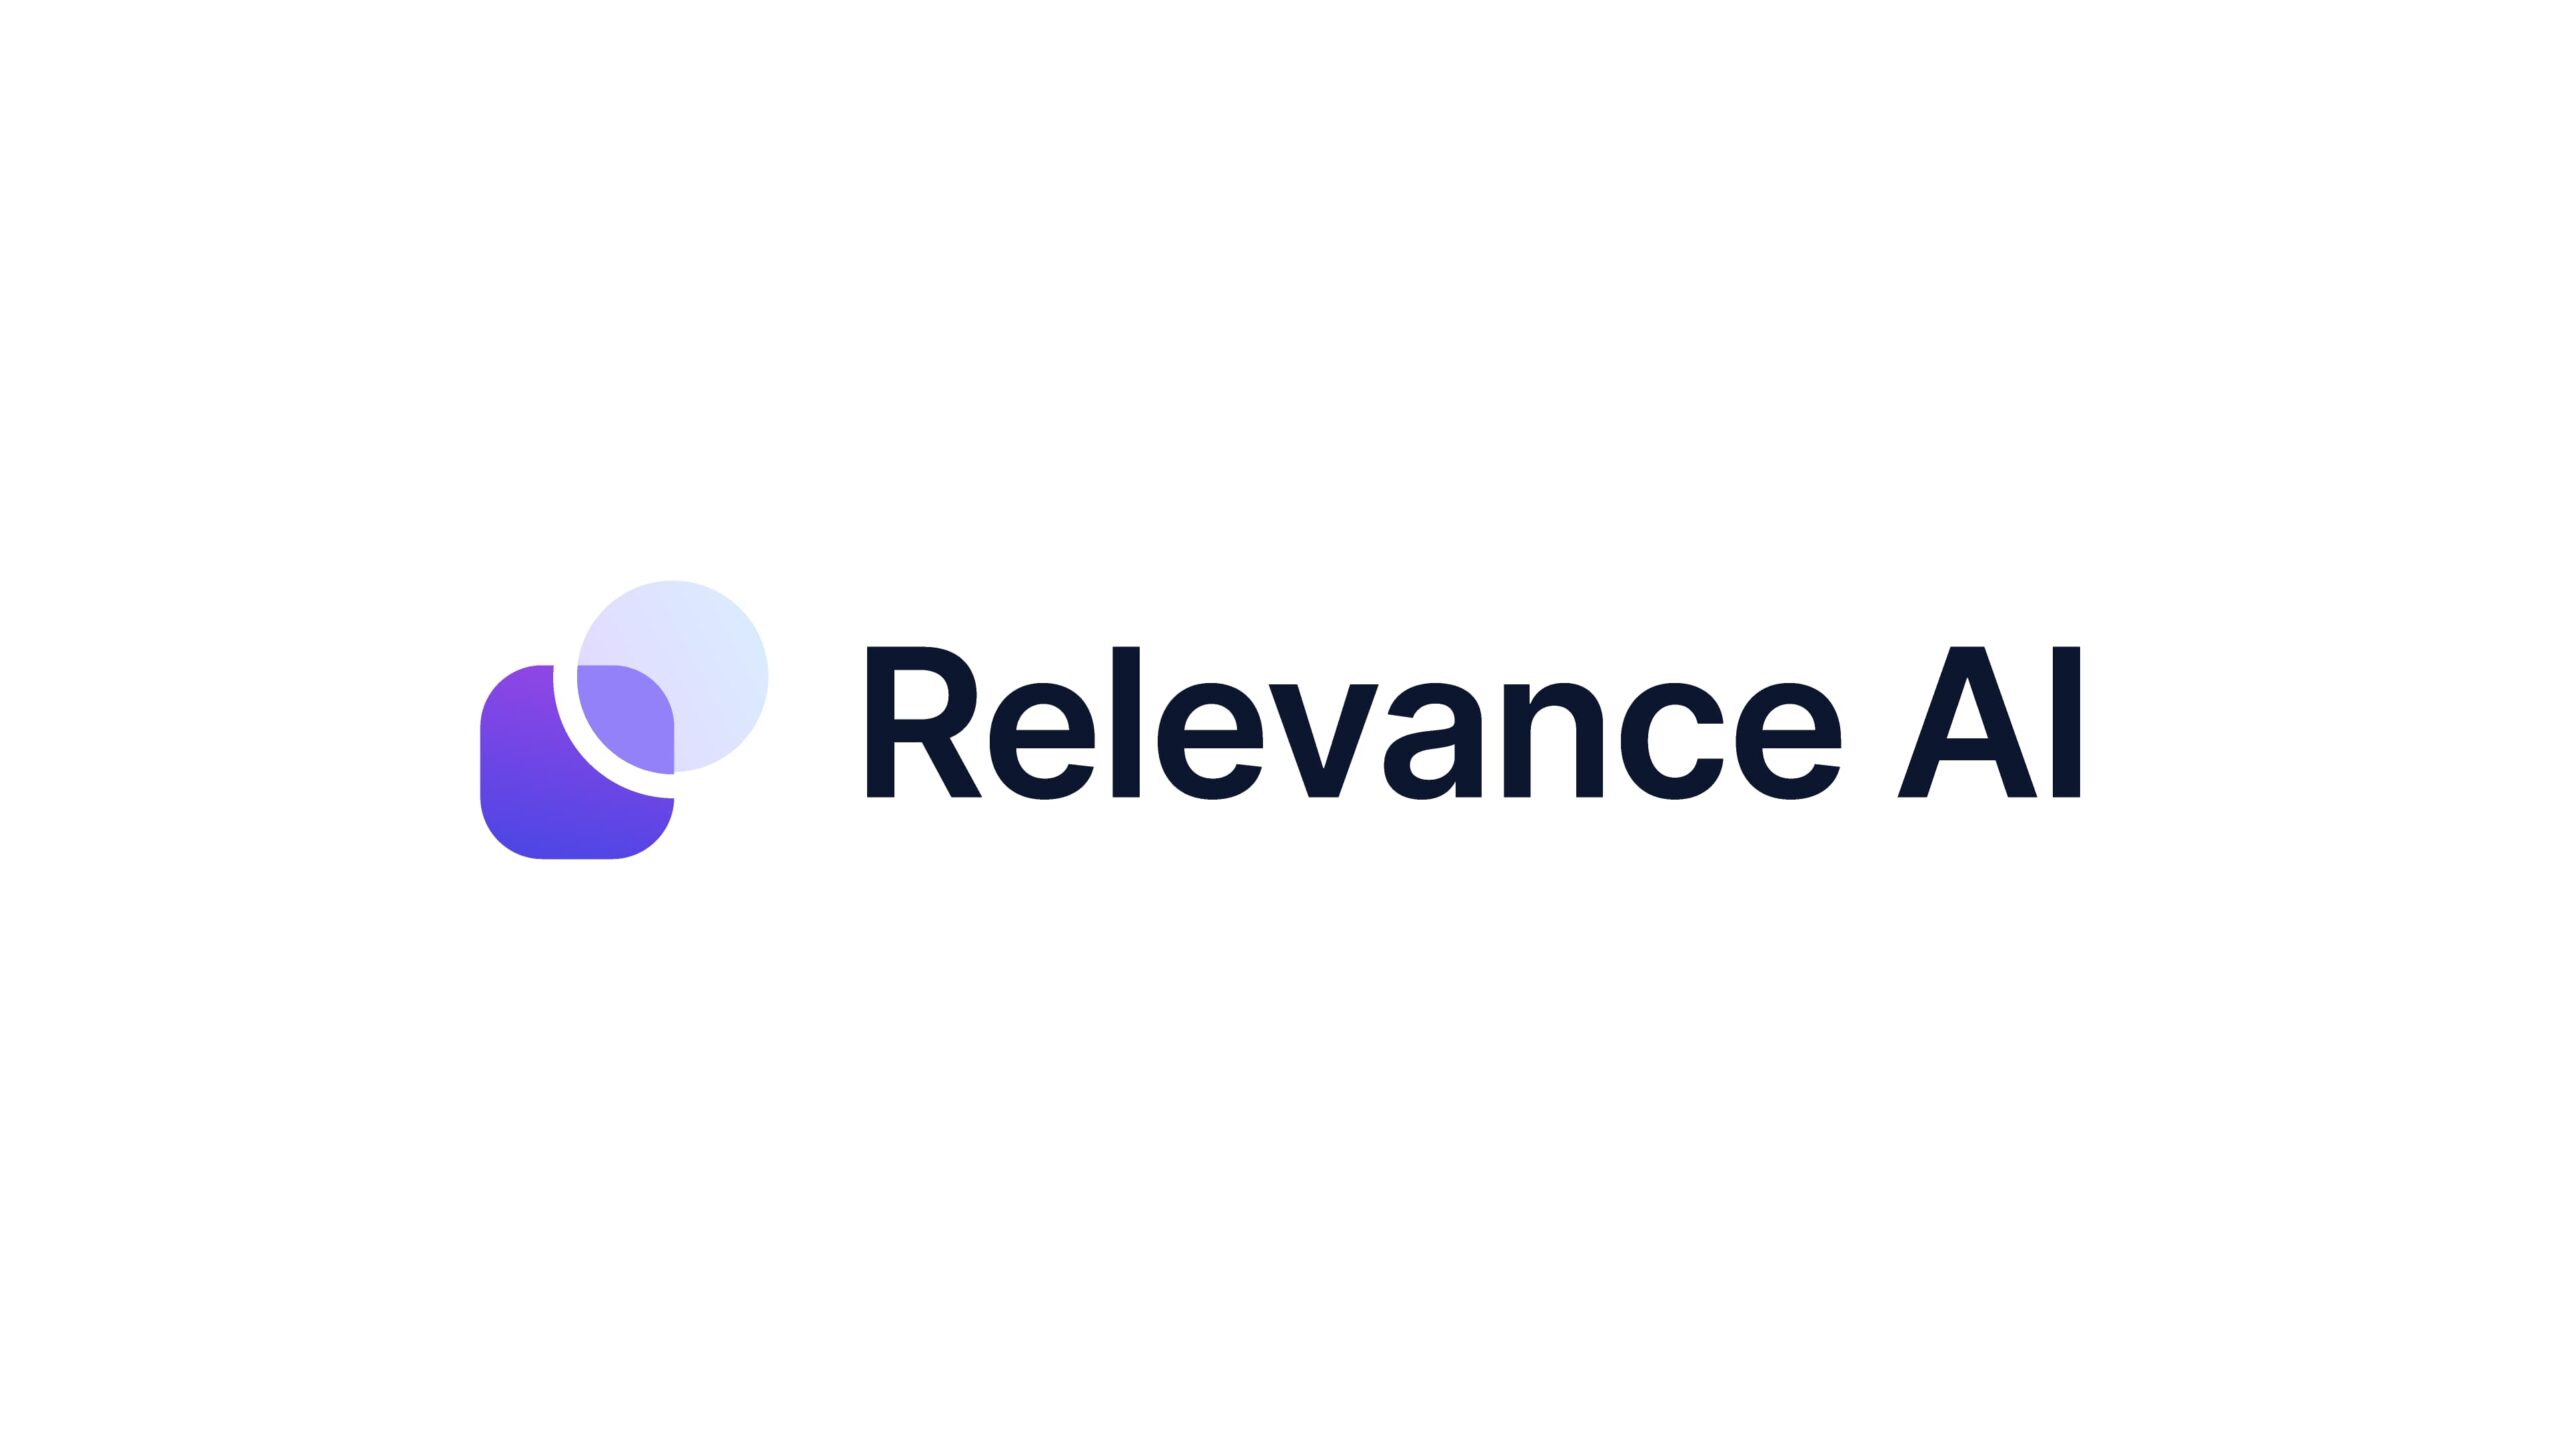 オーストラリアスタートアップのRelevance AIがシリーズAにて14.5億円の資金調達